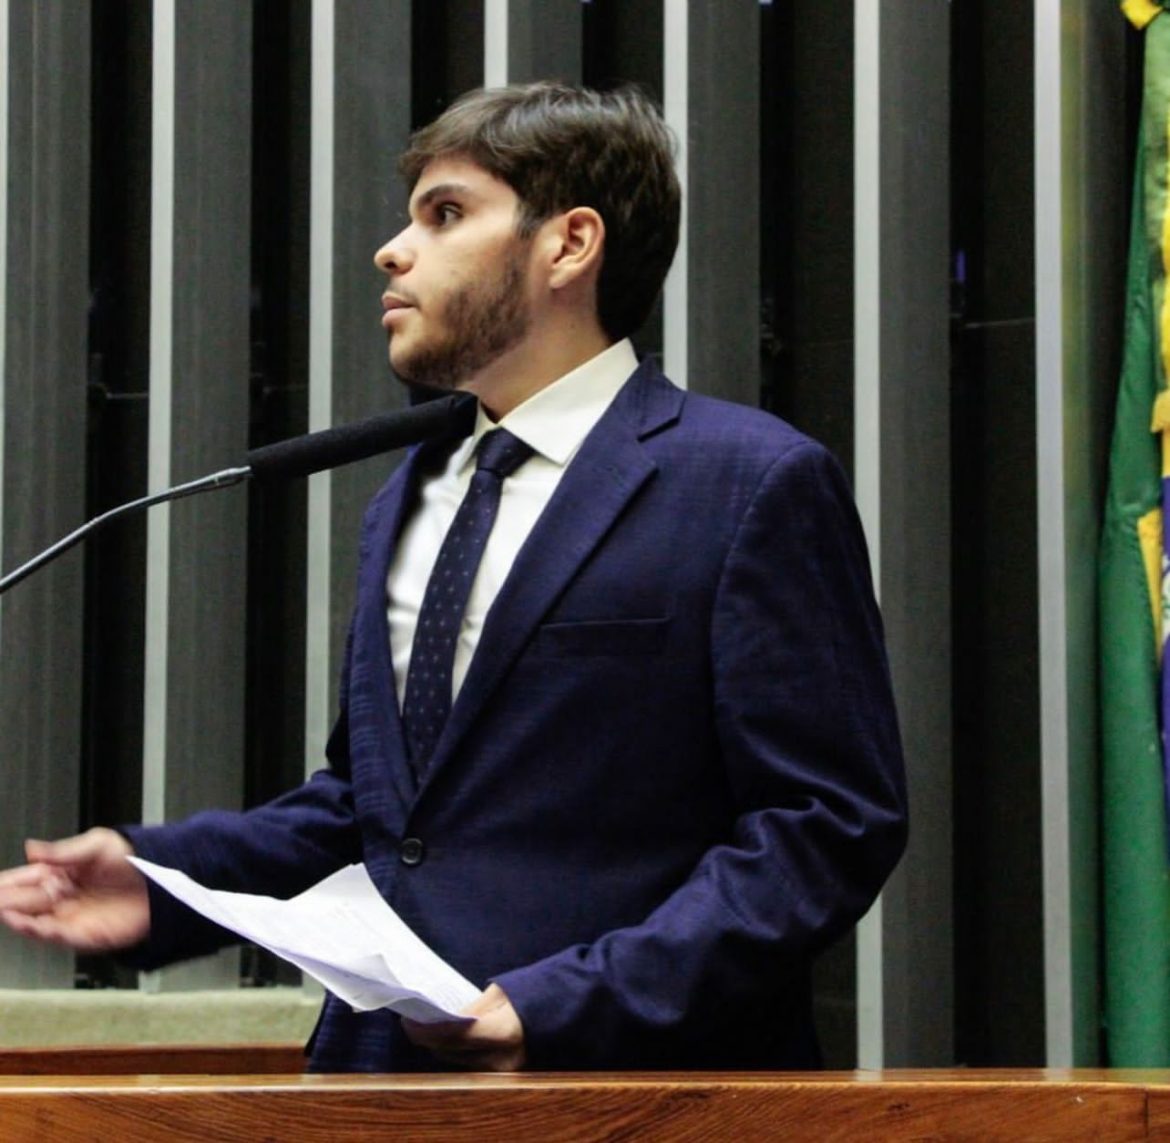 Médico Rômulo Gouveia Filho se filia ao PSB para concorrer a deputado federal